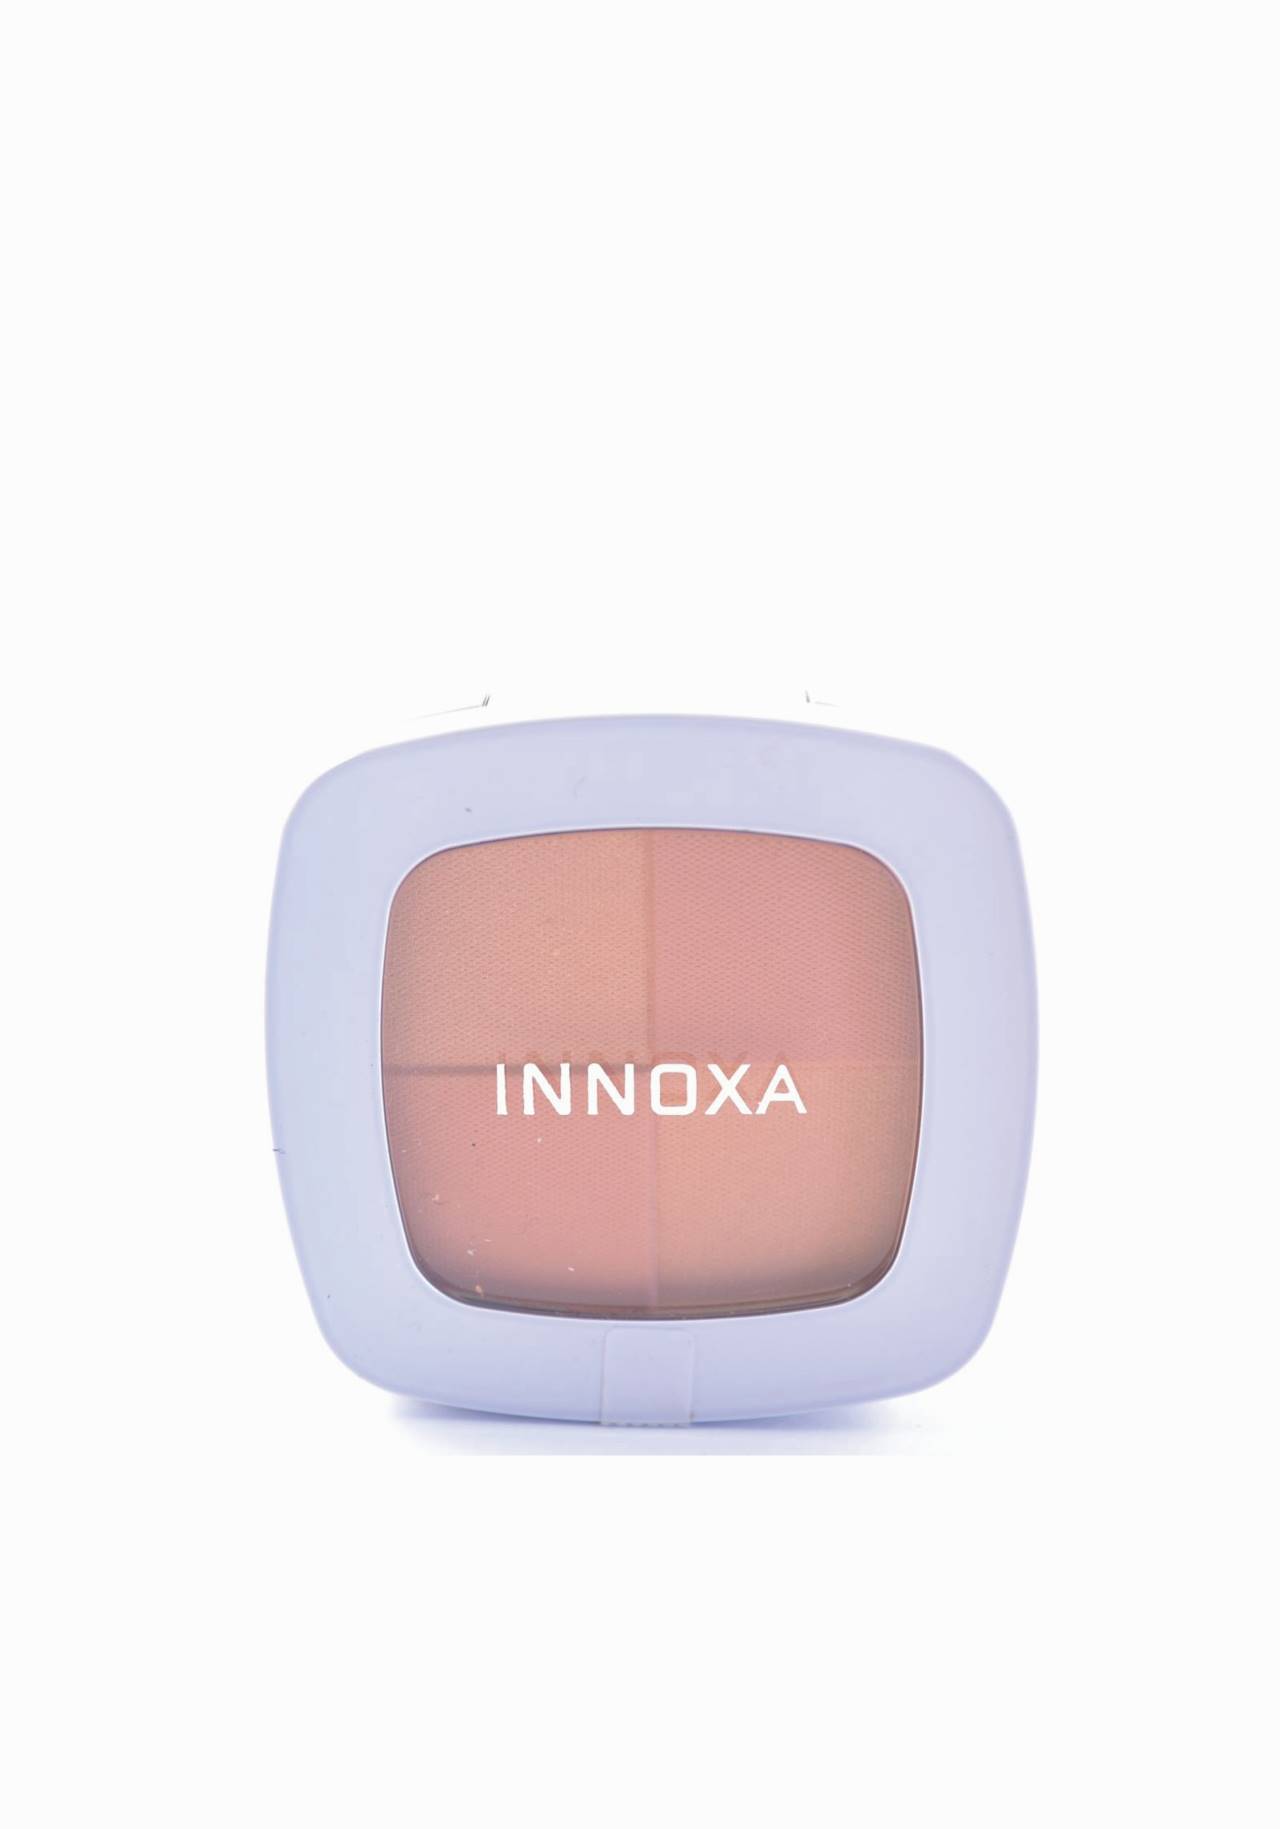 Colorete Innoxa de venta en farmacia Guapísima y muy natural con maquillaje de farmacia por menos de 15€ 2020